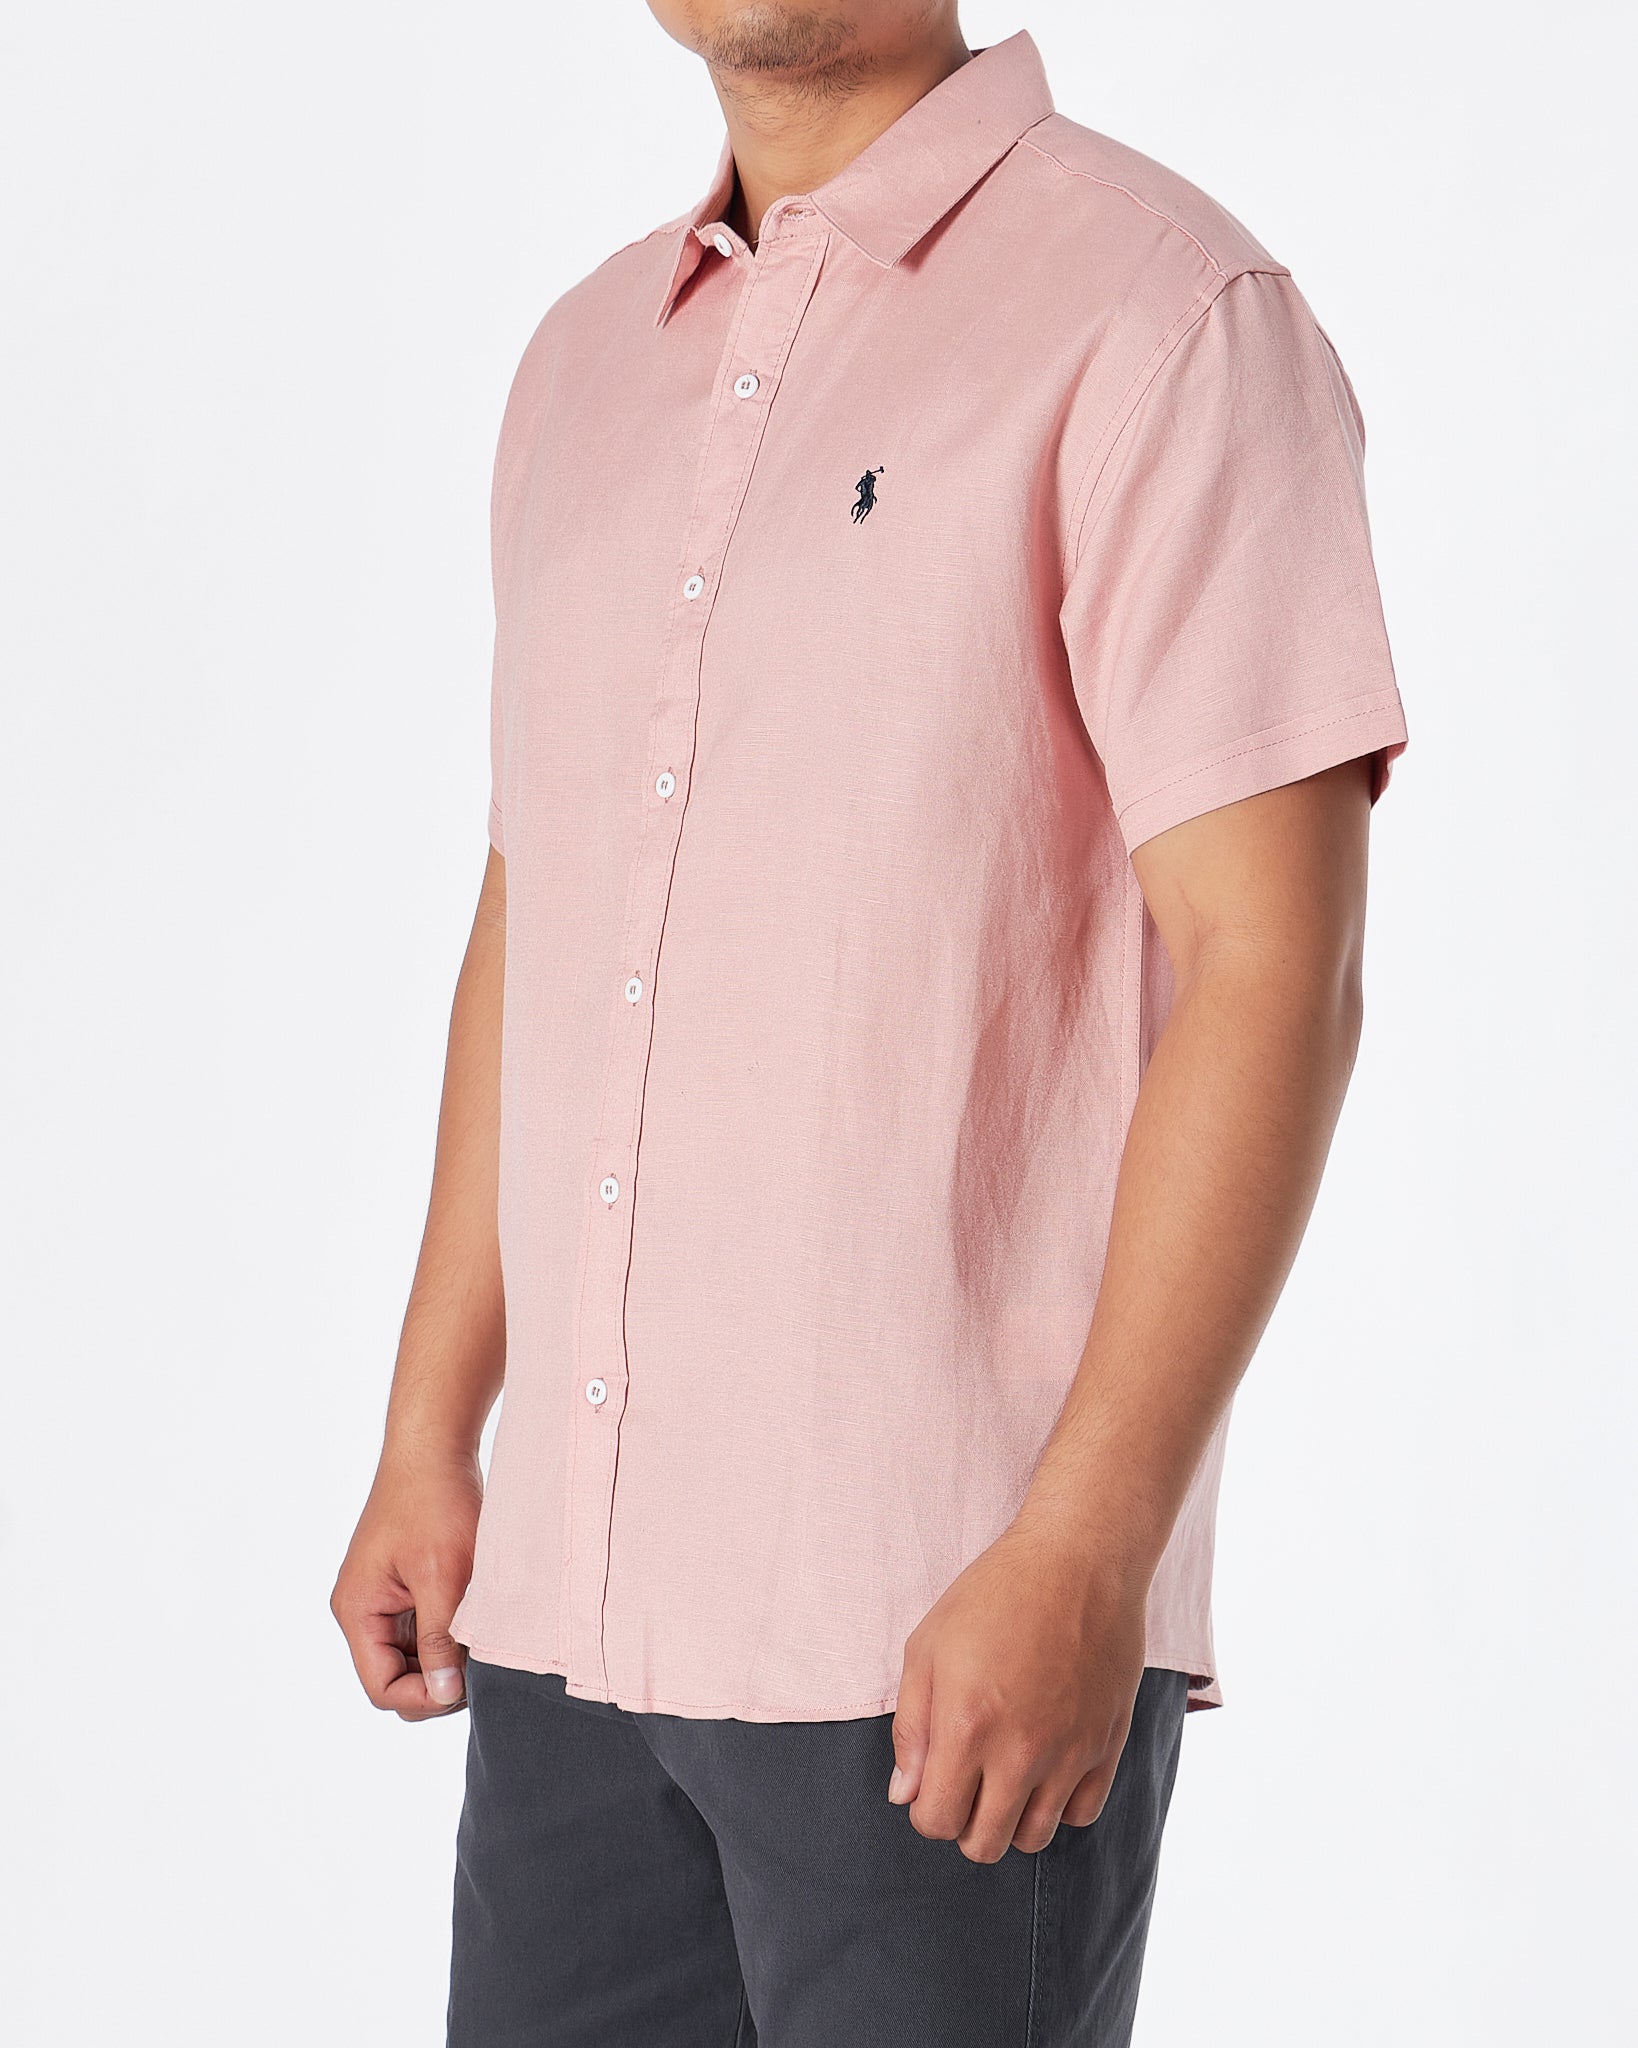 RL 면 남성 핑크 셔츠 반팔 28.90